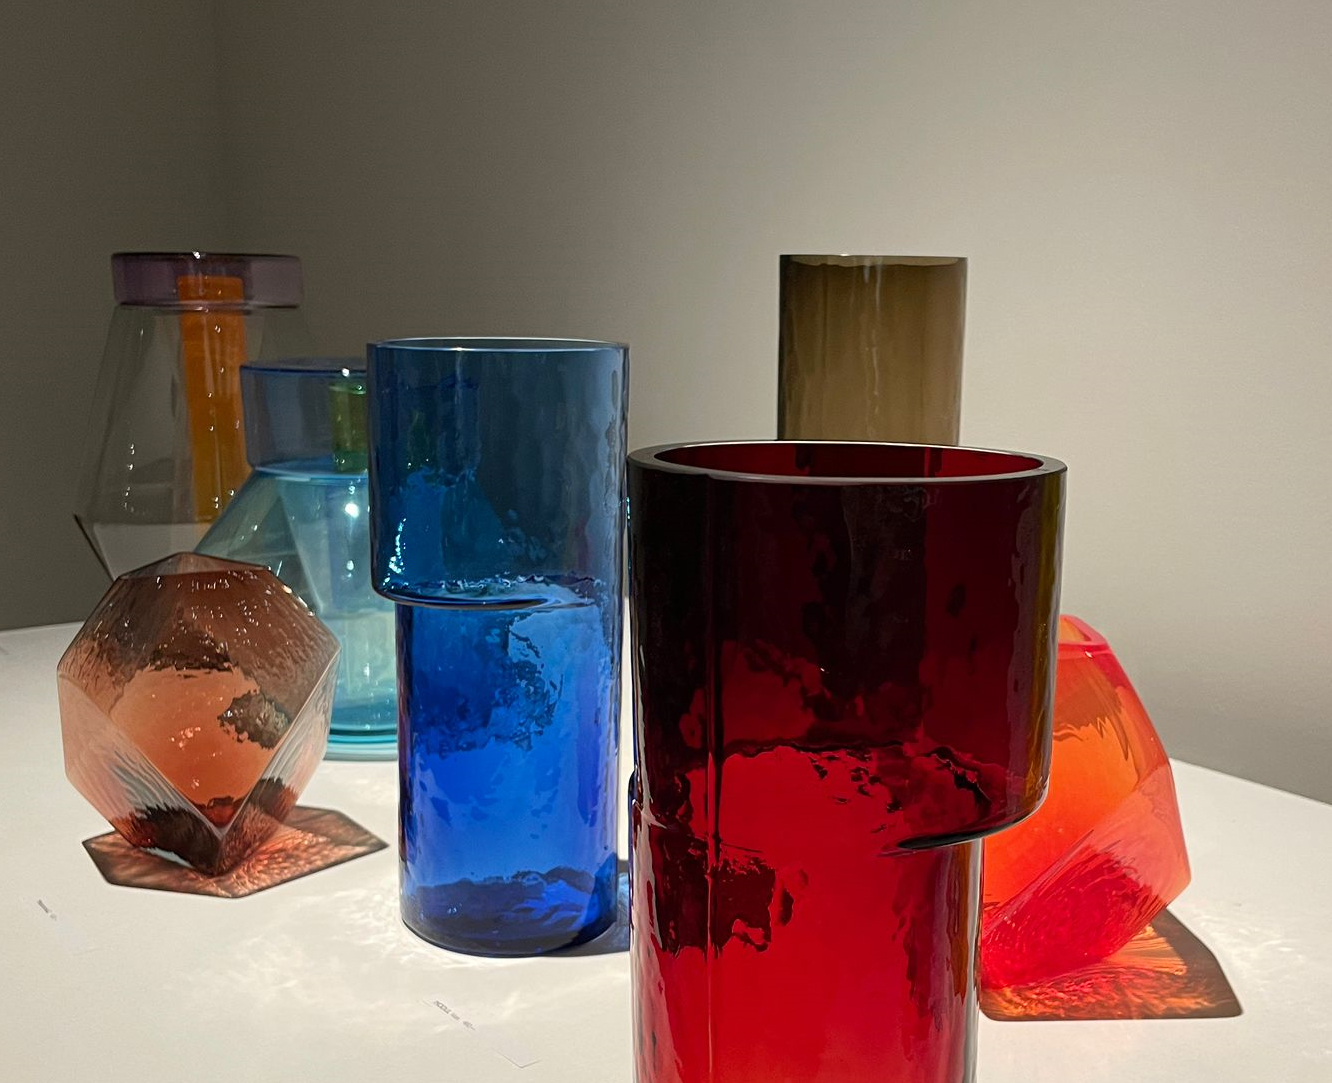 Foto: Ausstellungsstücke aus Glas, verschiedene Formen und Farben (Fotoquelle: Cassandra Hommel)